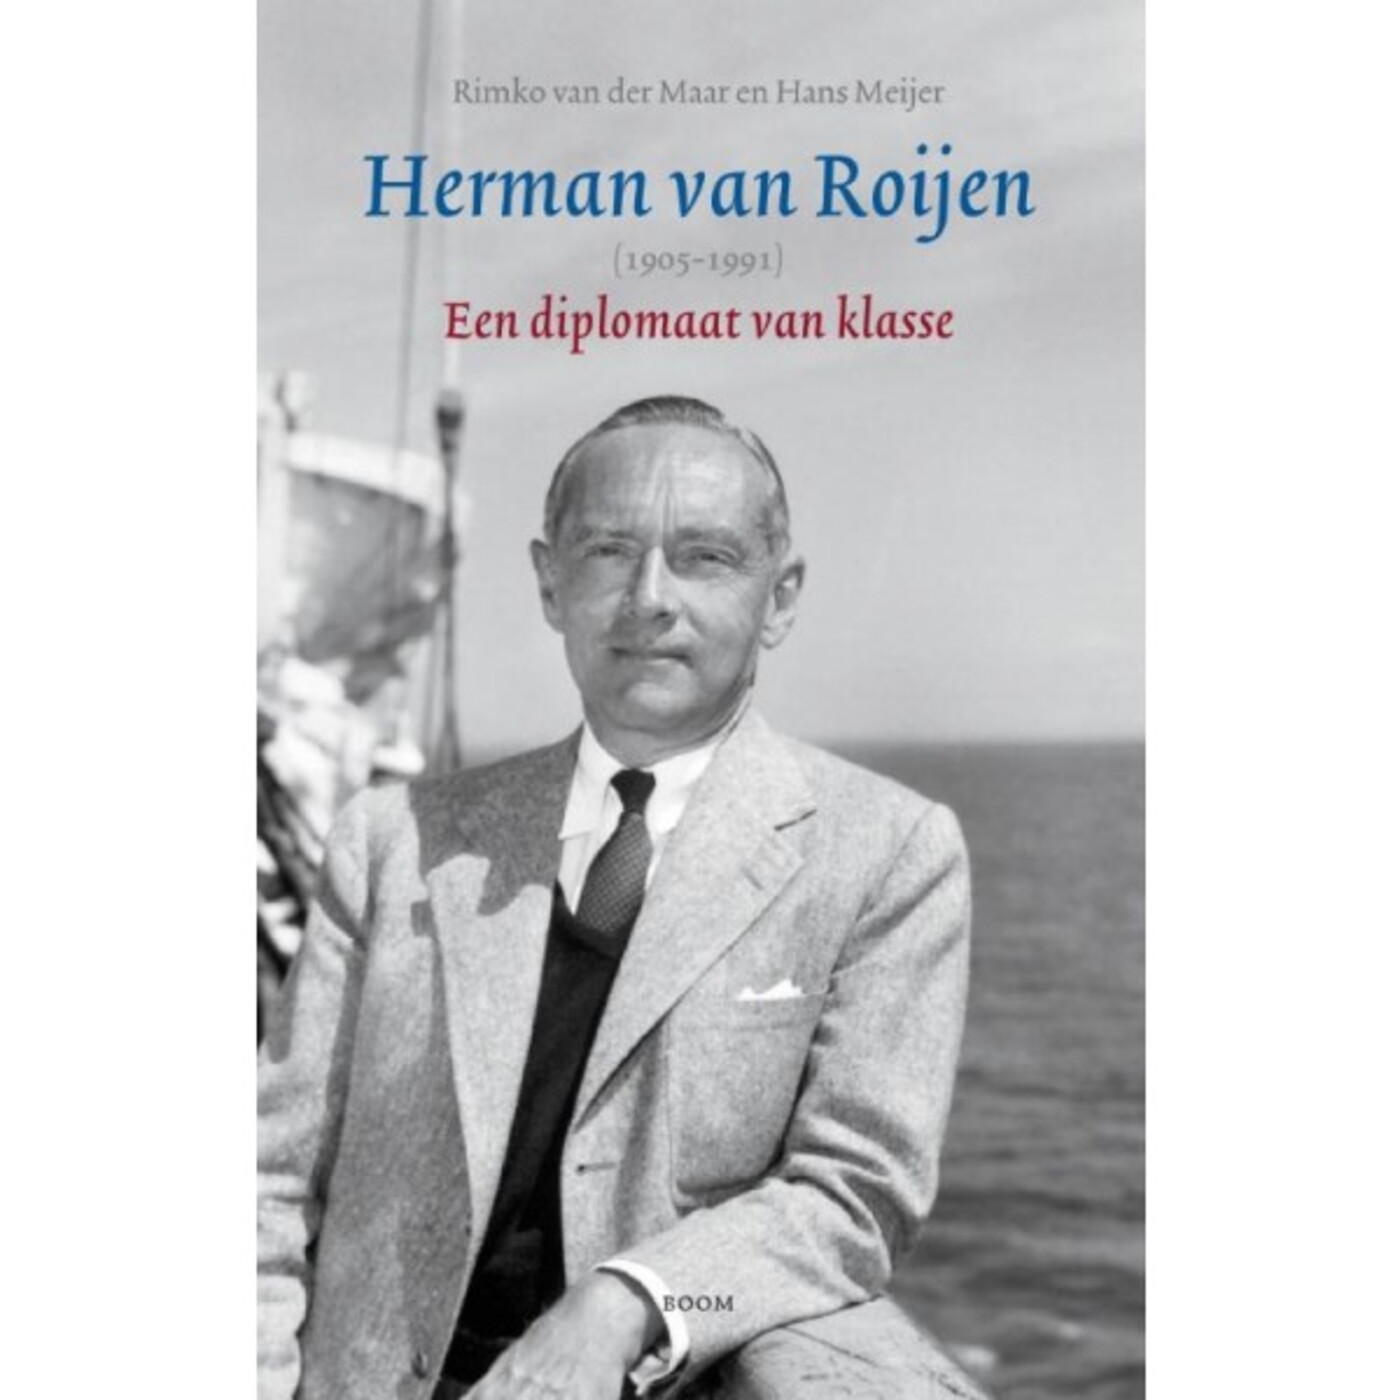 Diplomaat Herman van Roijen - OVT 12 mei 2013